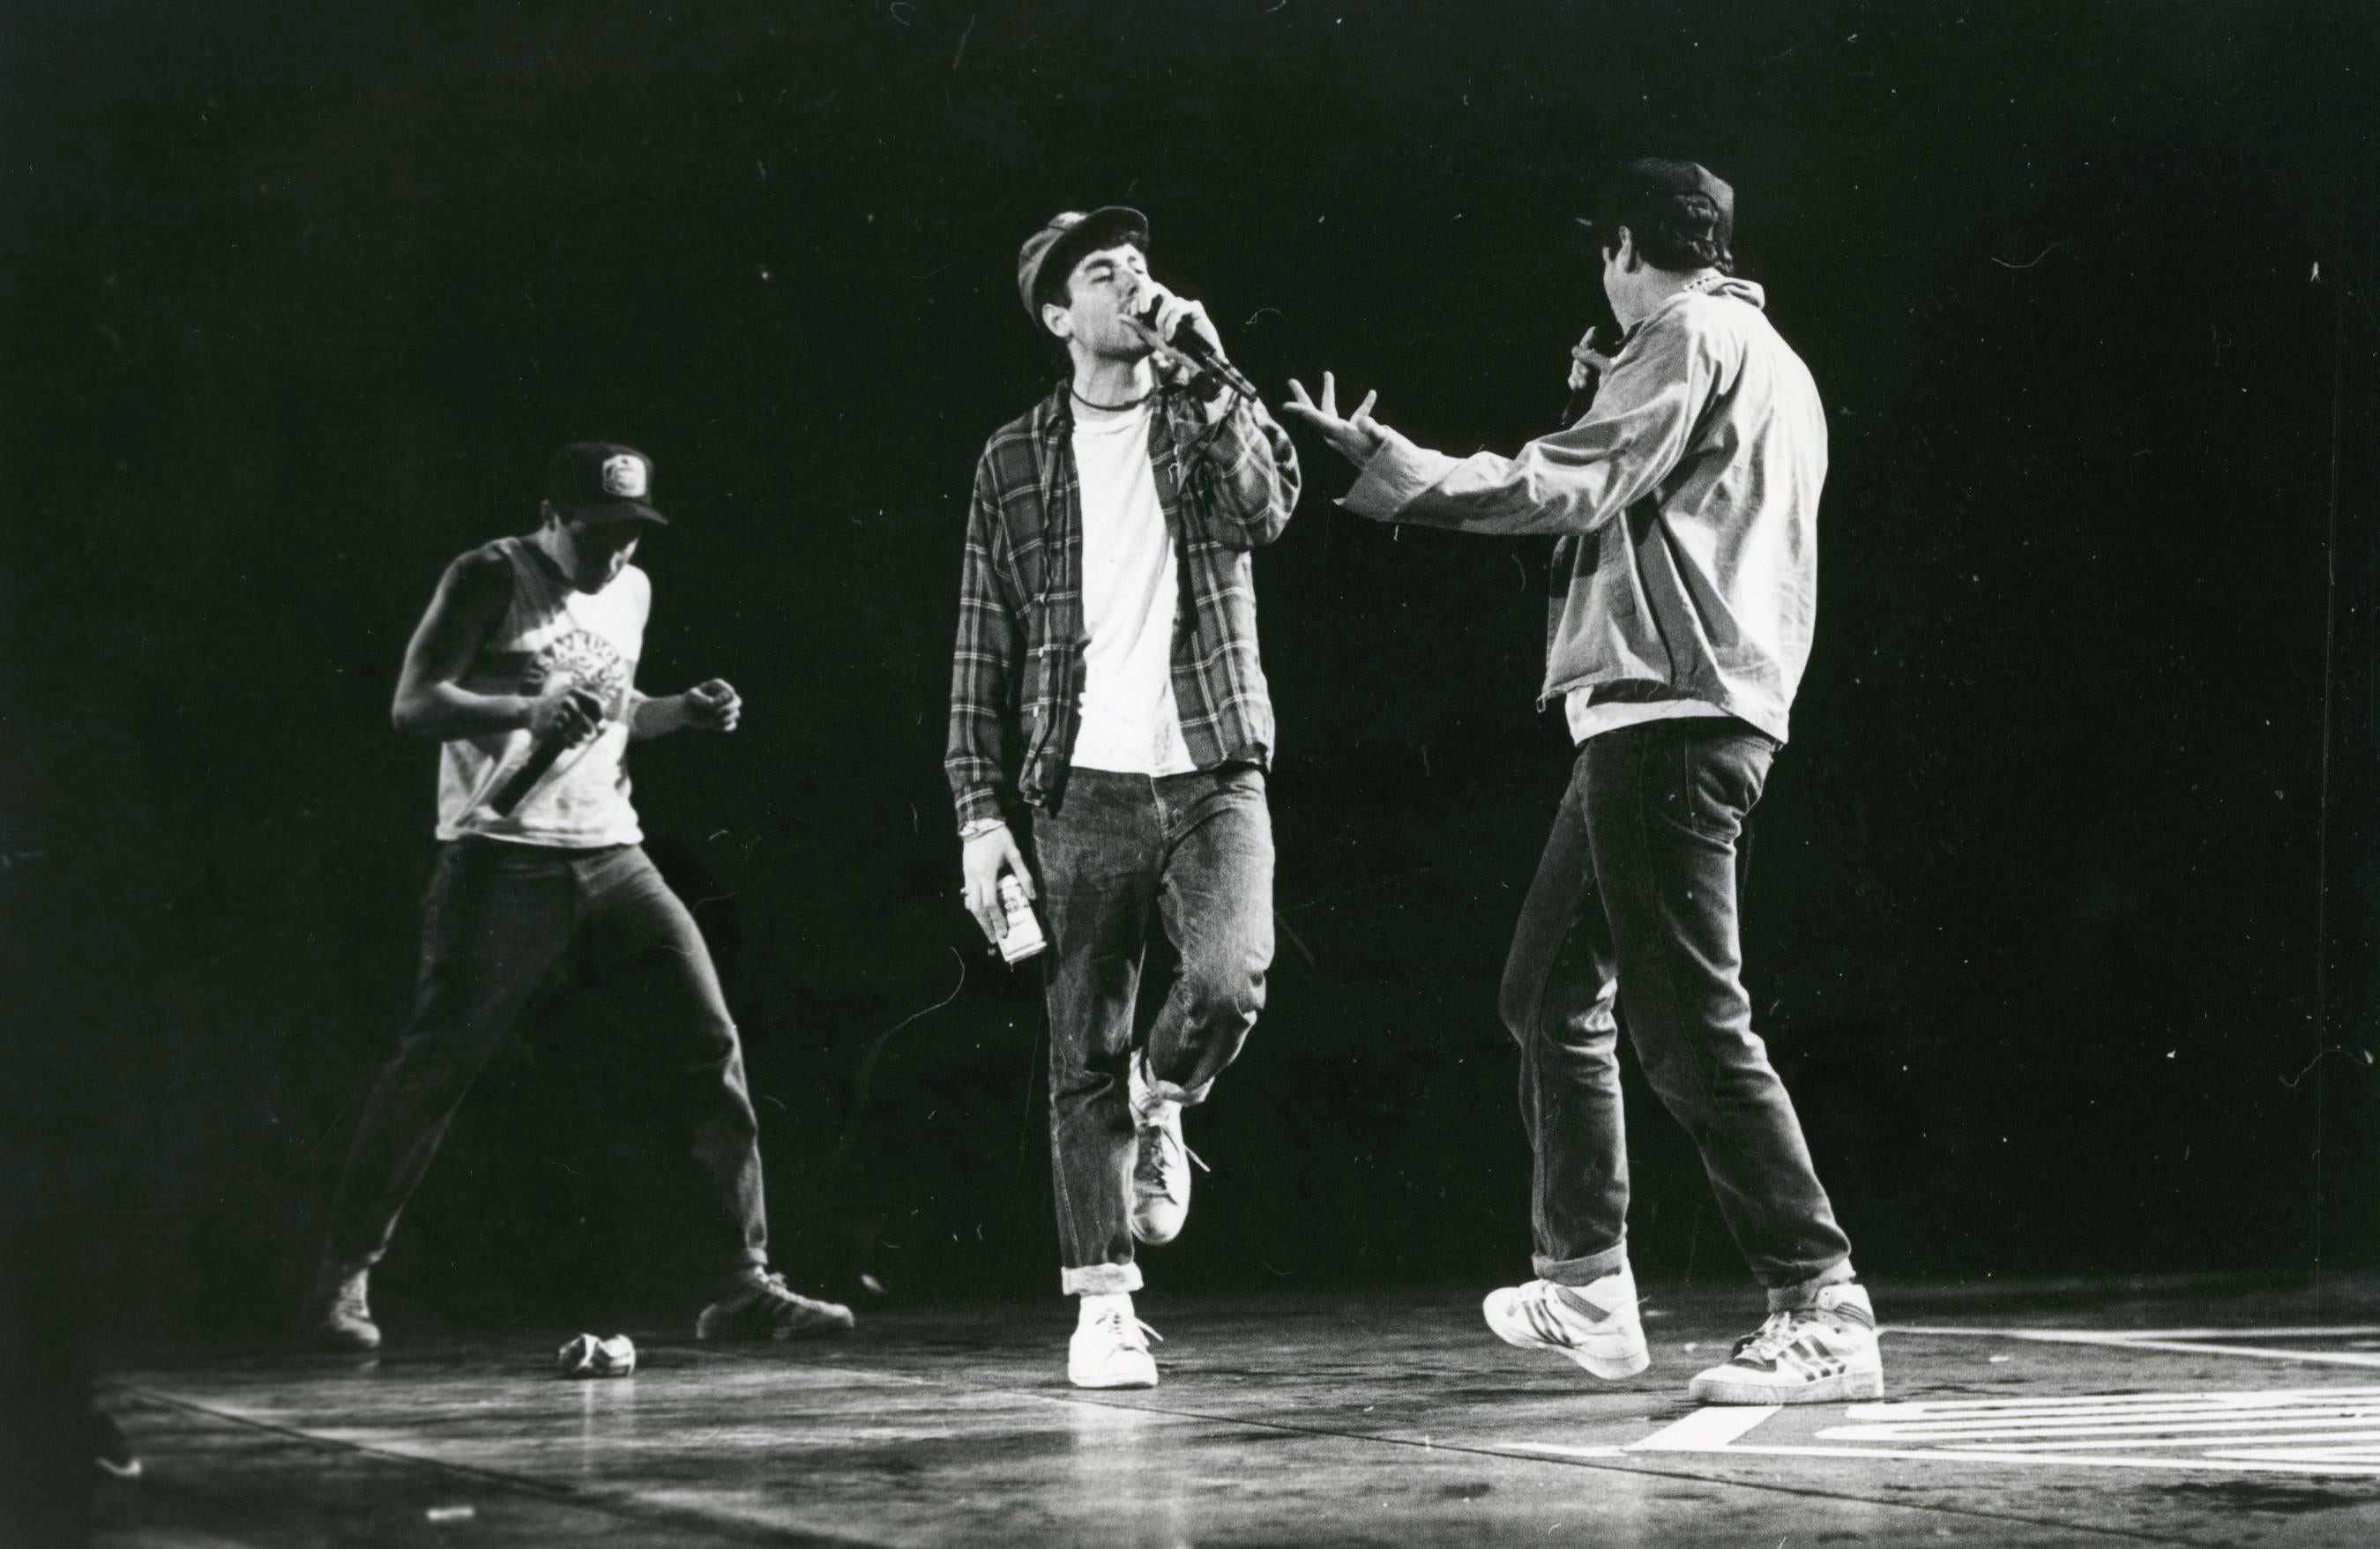 Unknown Portrait Photograph - Beastie Boys Live In Concert Vintage Original Photograph